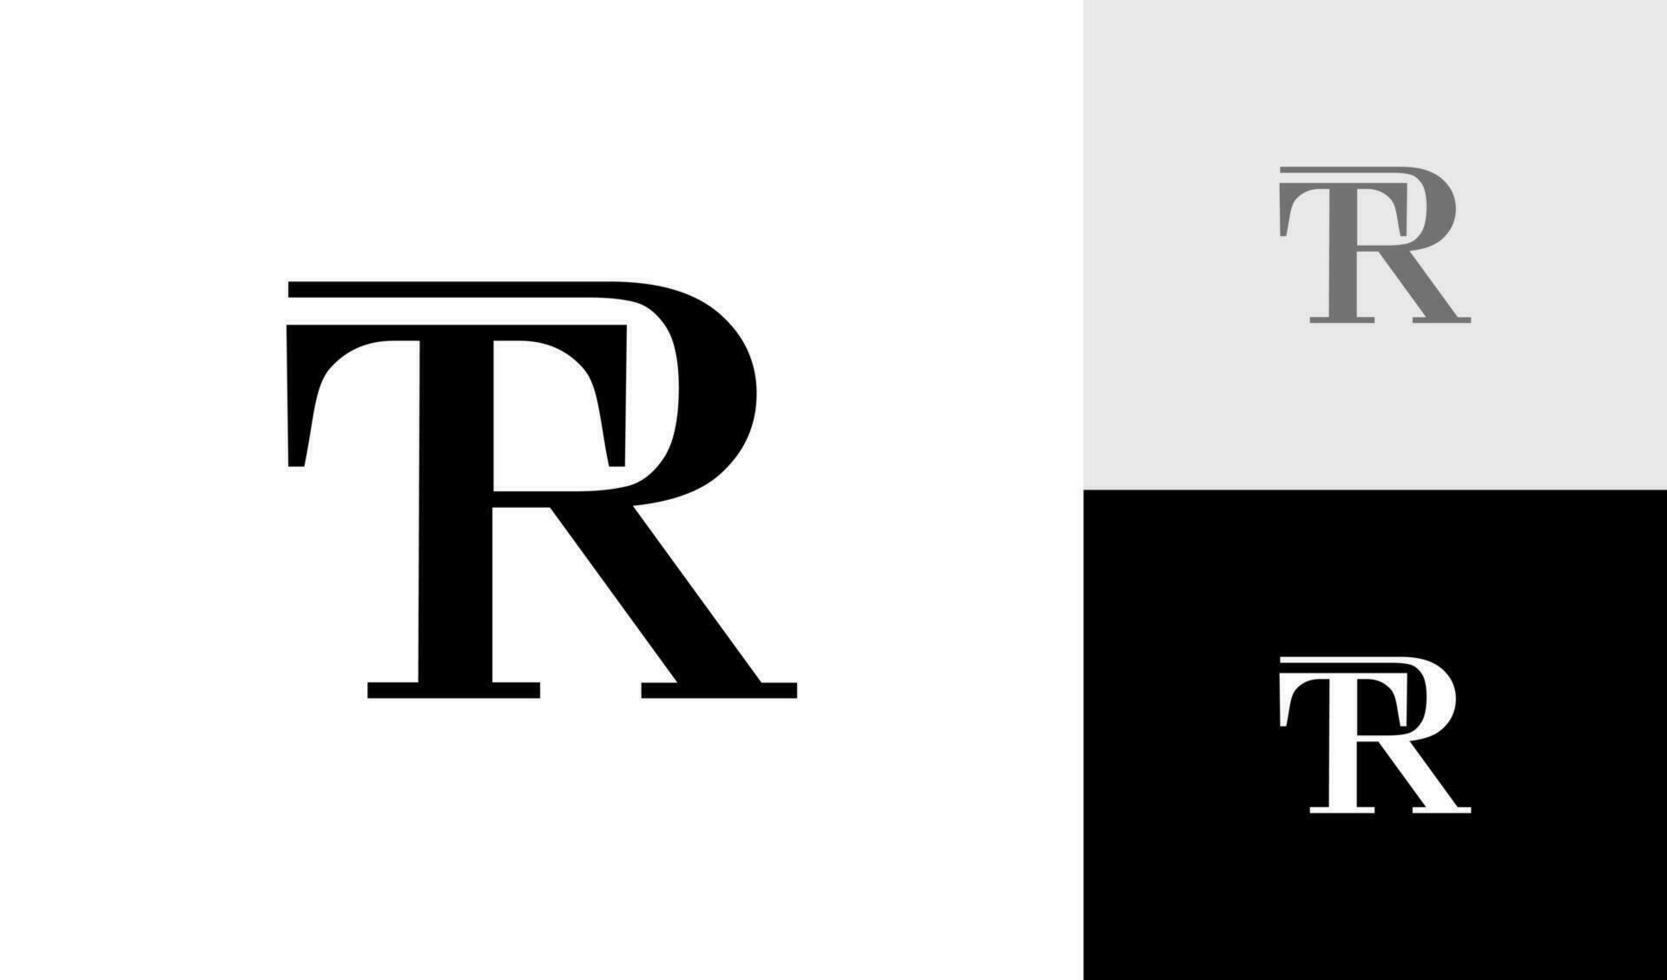 letra tr inicial monograma logo diseño vector